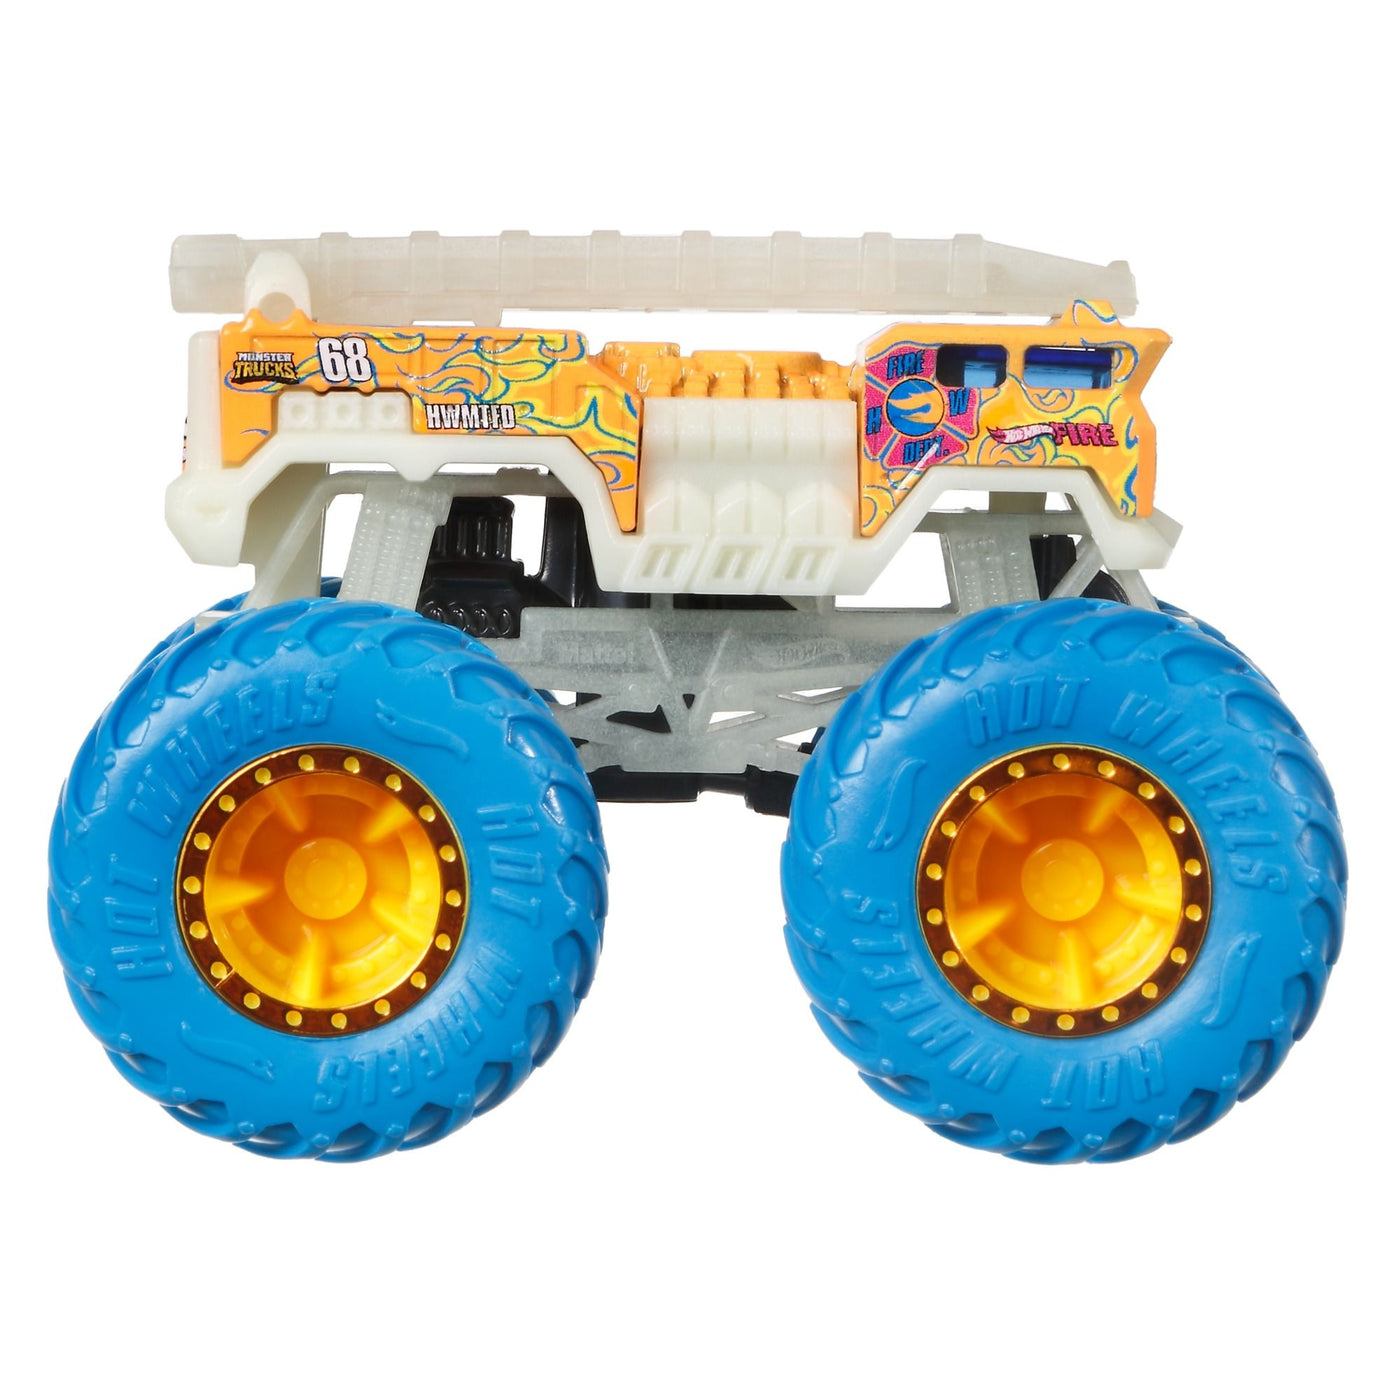 Hot Wheels GITD Monster Truck Assortment - 1 Supplied - stylecreep.com